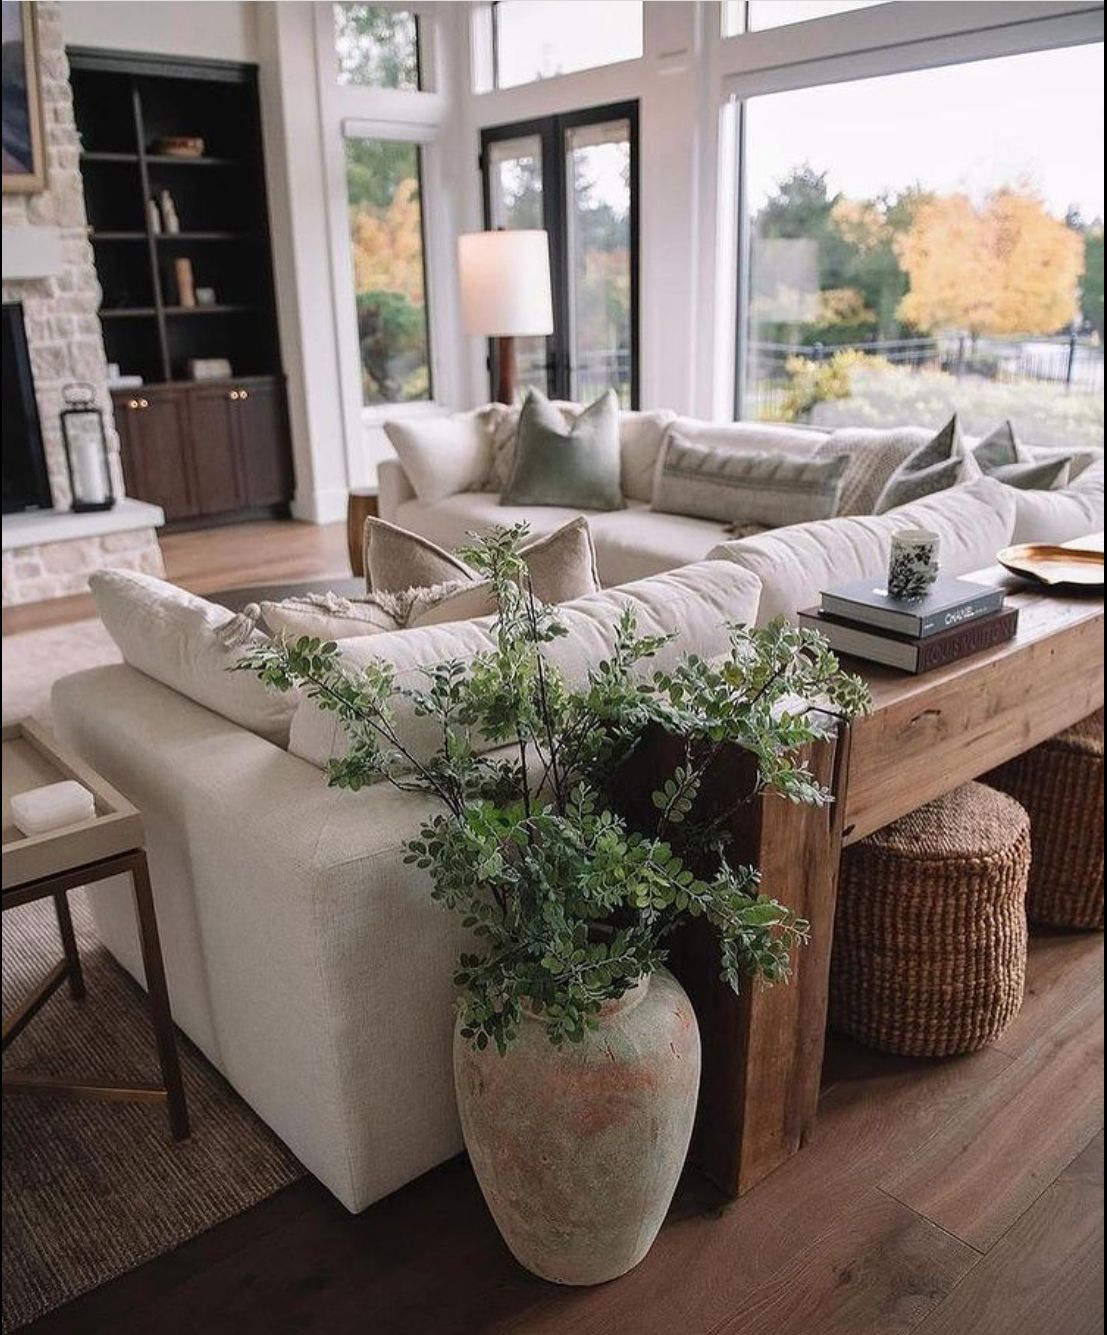 Big Sofa Living Room Decor Ideas